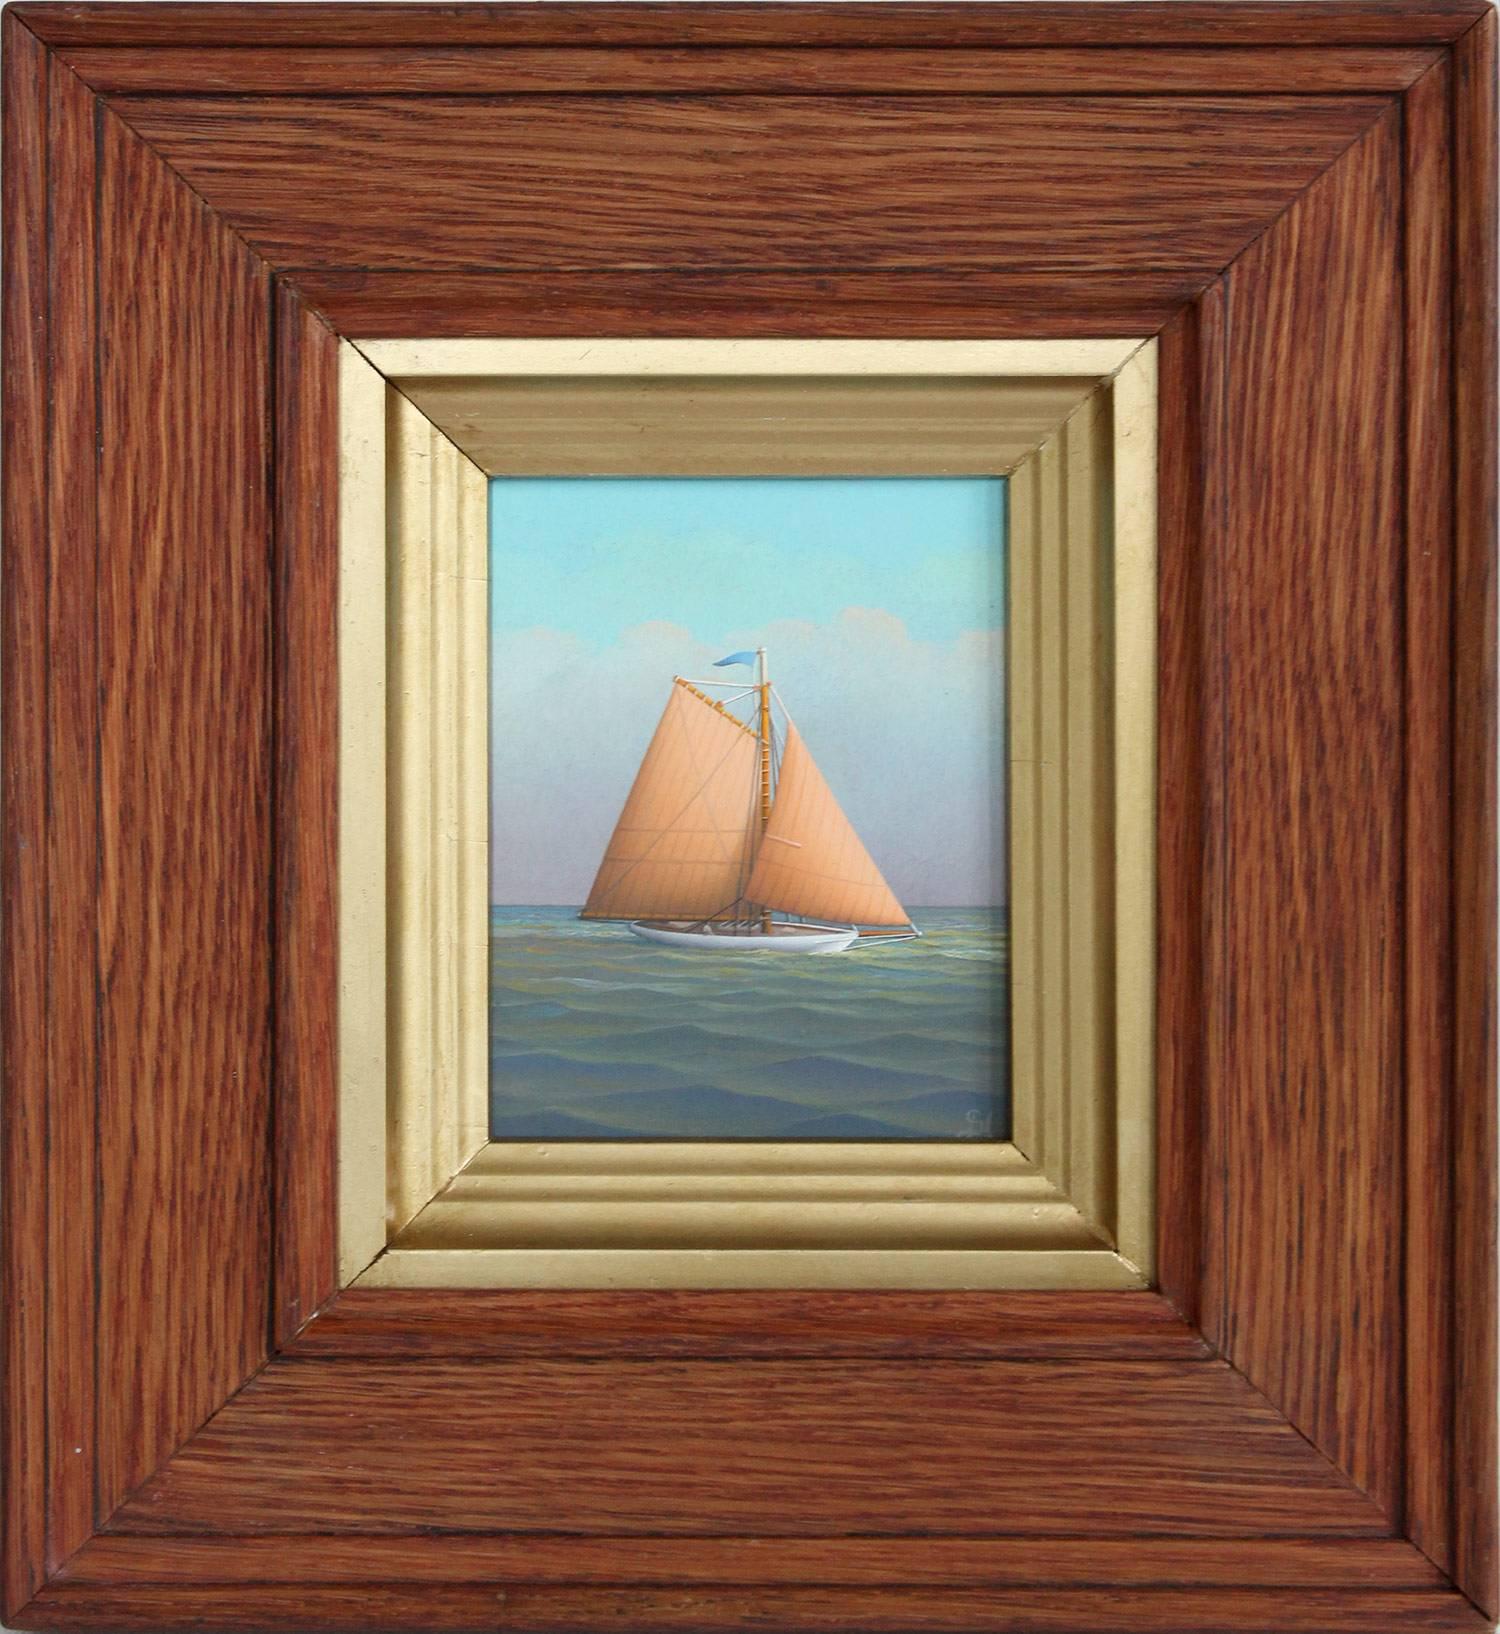 Peinture à l'huile réaliste "Sailing on the Caribbean" sur planche d'un voilier en mer ouverte